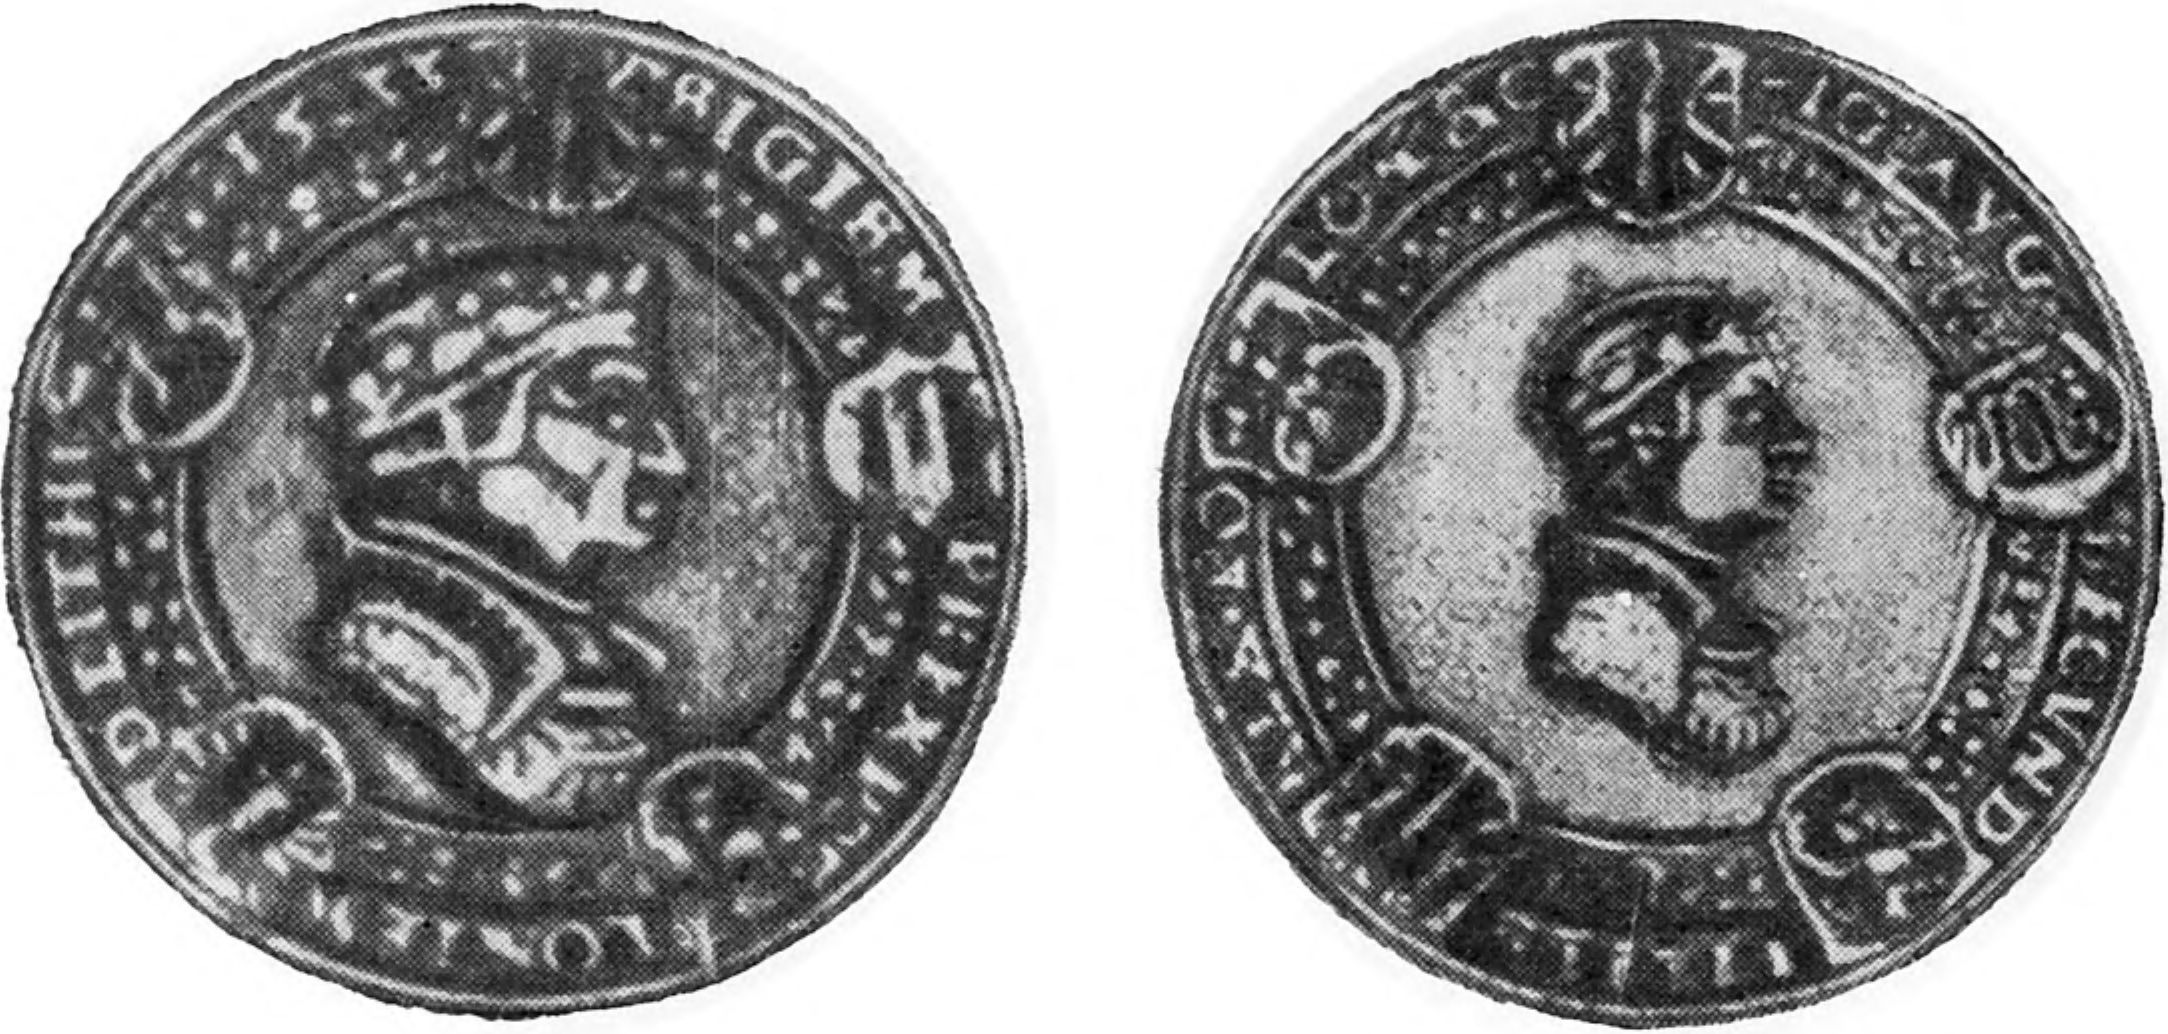 Медаль работы М. Шиллинга с изображением короля Сигизмунда I в обрамлении листьев плюща